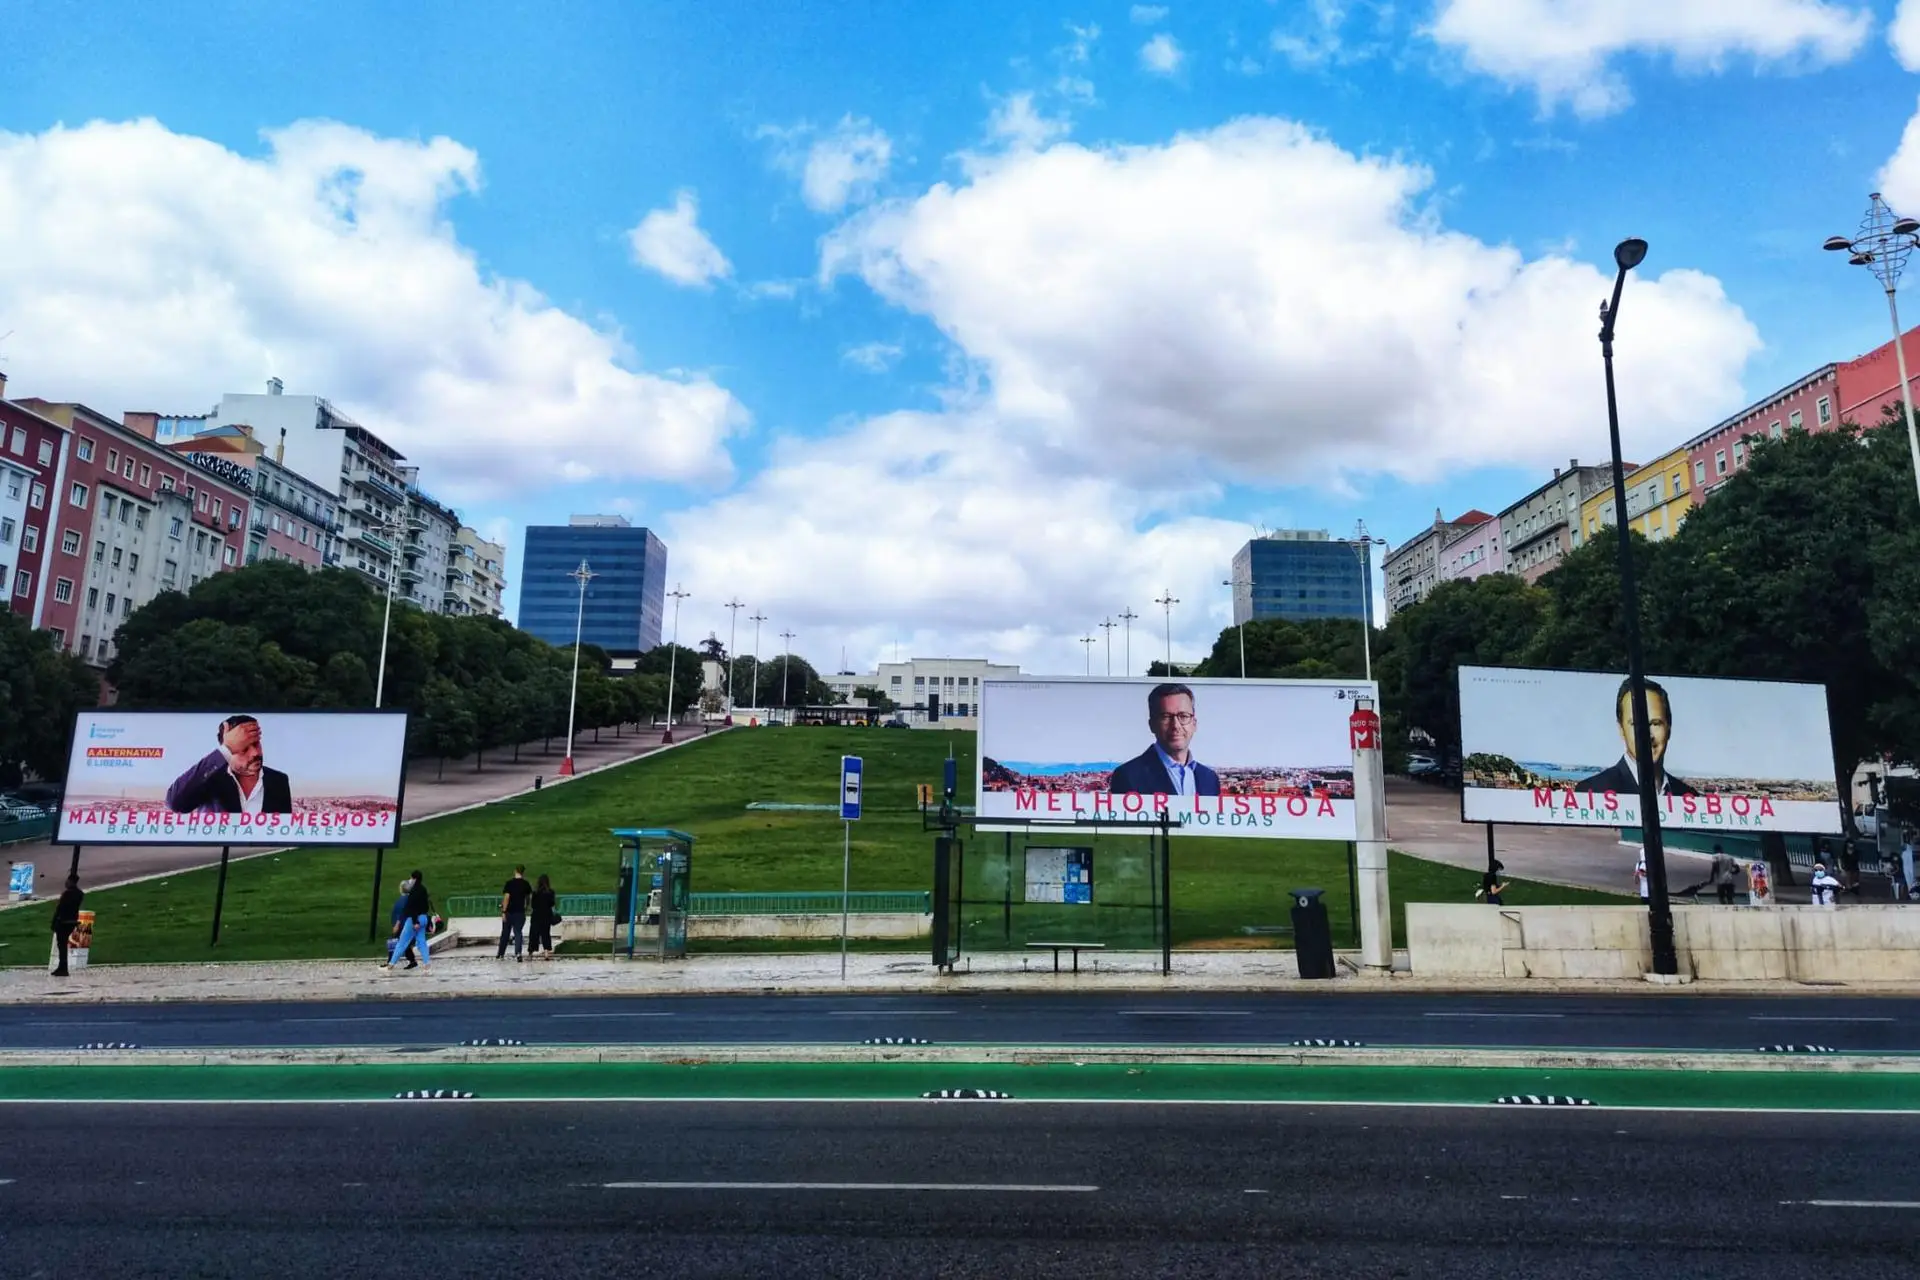 Guerra de cartazes em Lisboa: IL coloca outdoor junto aos cartazes “gémeos” de Moedas e Medina